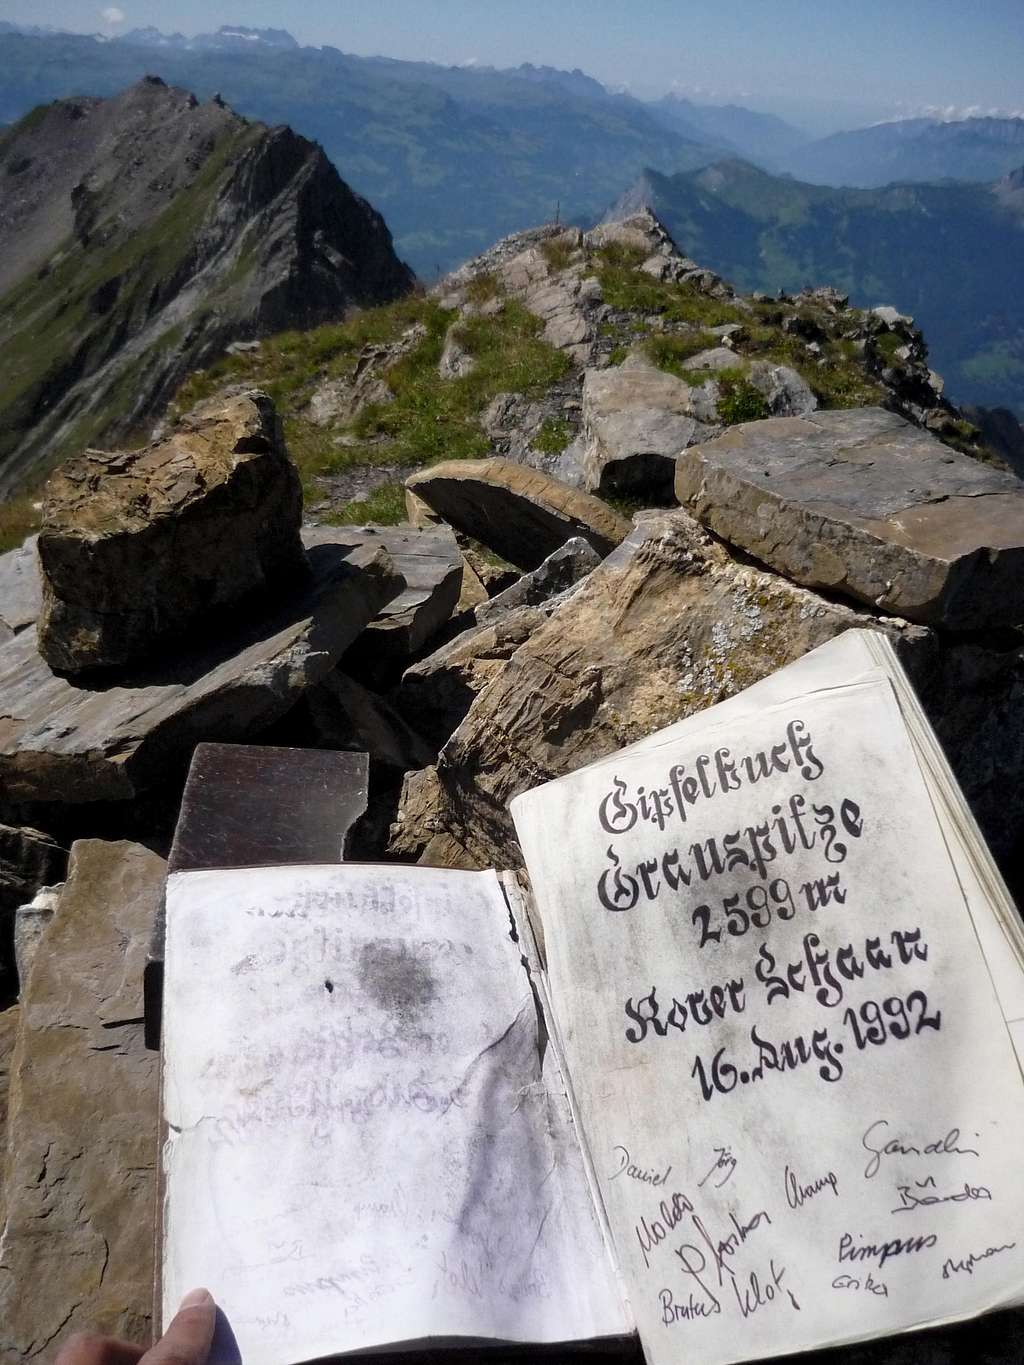 Grauspitz summit book